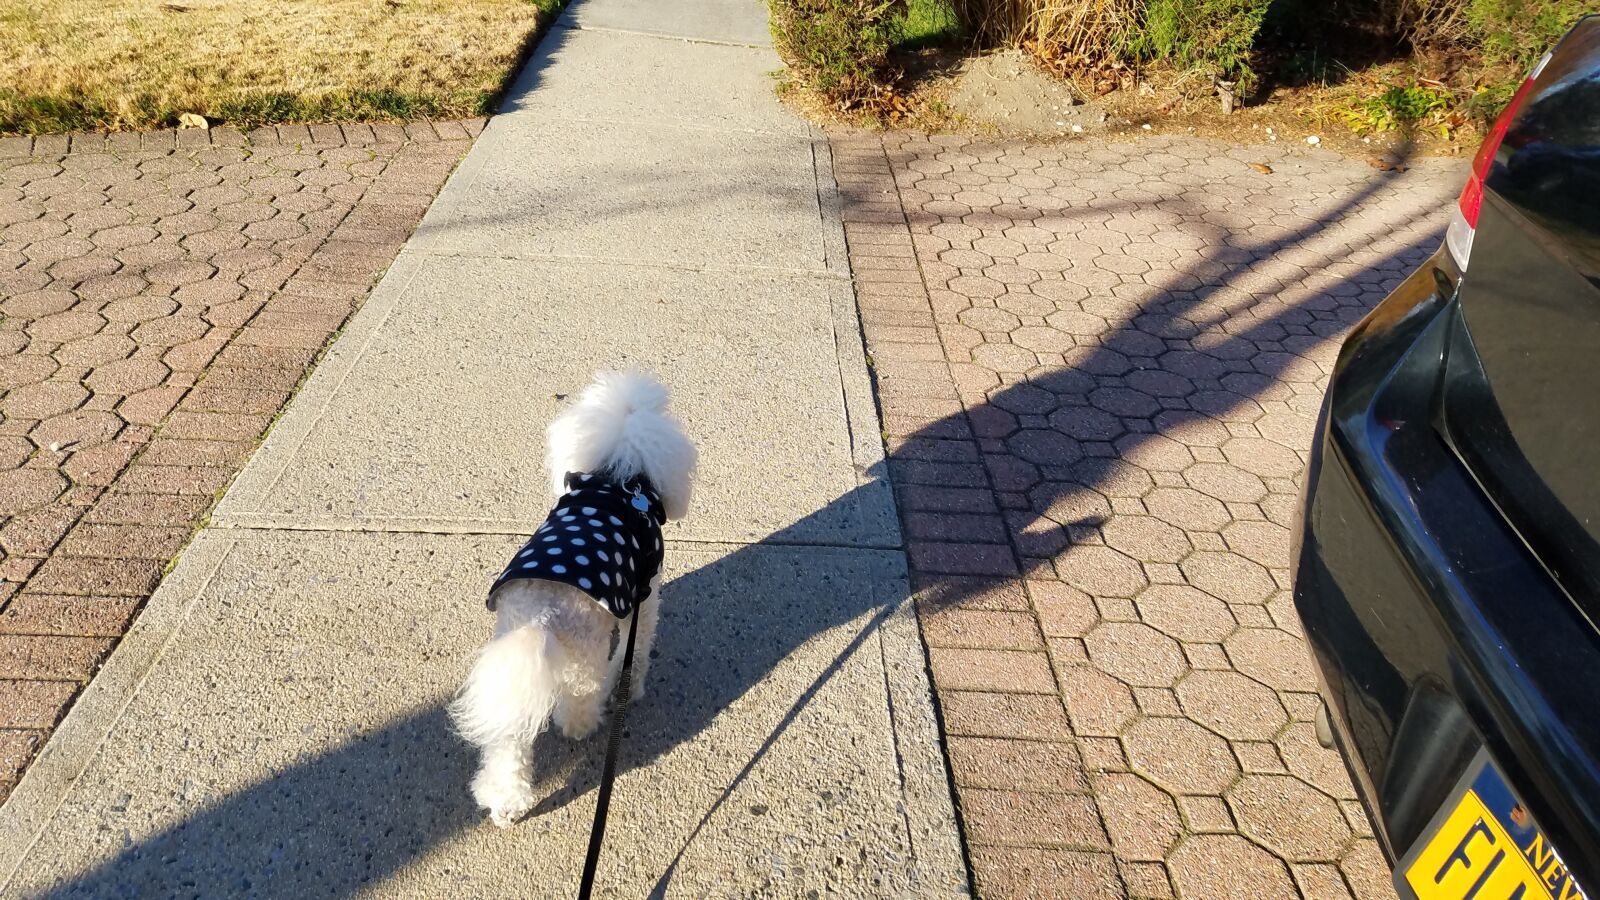 Samsung Galaxy S7 Edge sample photo. White dog, dog, cute photography